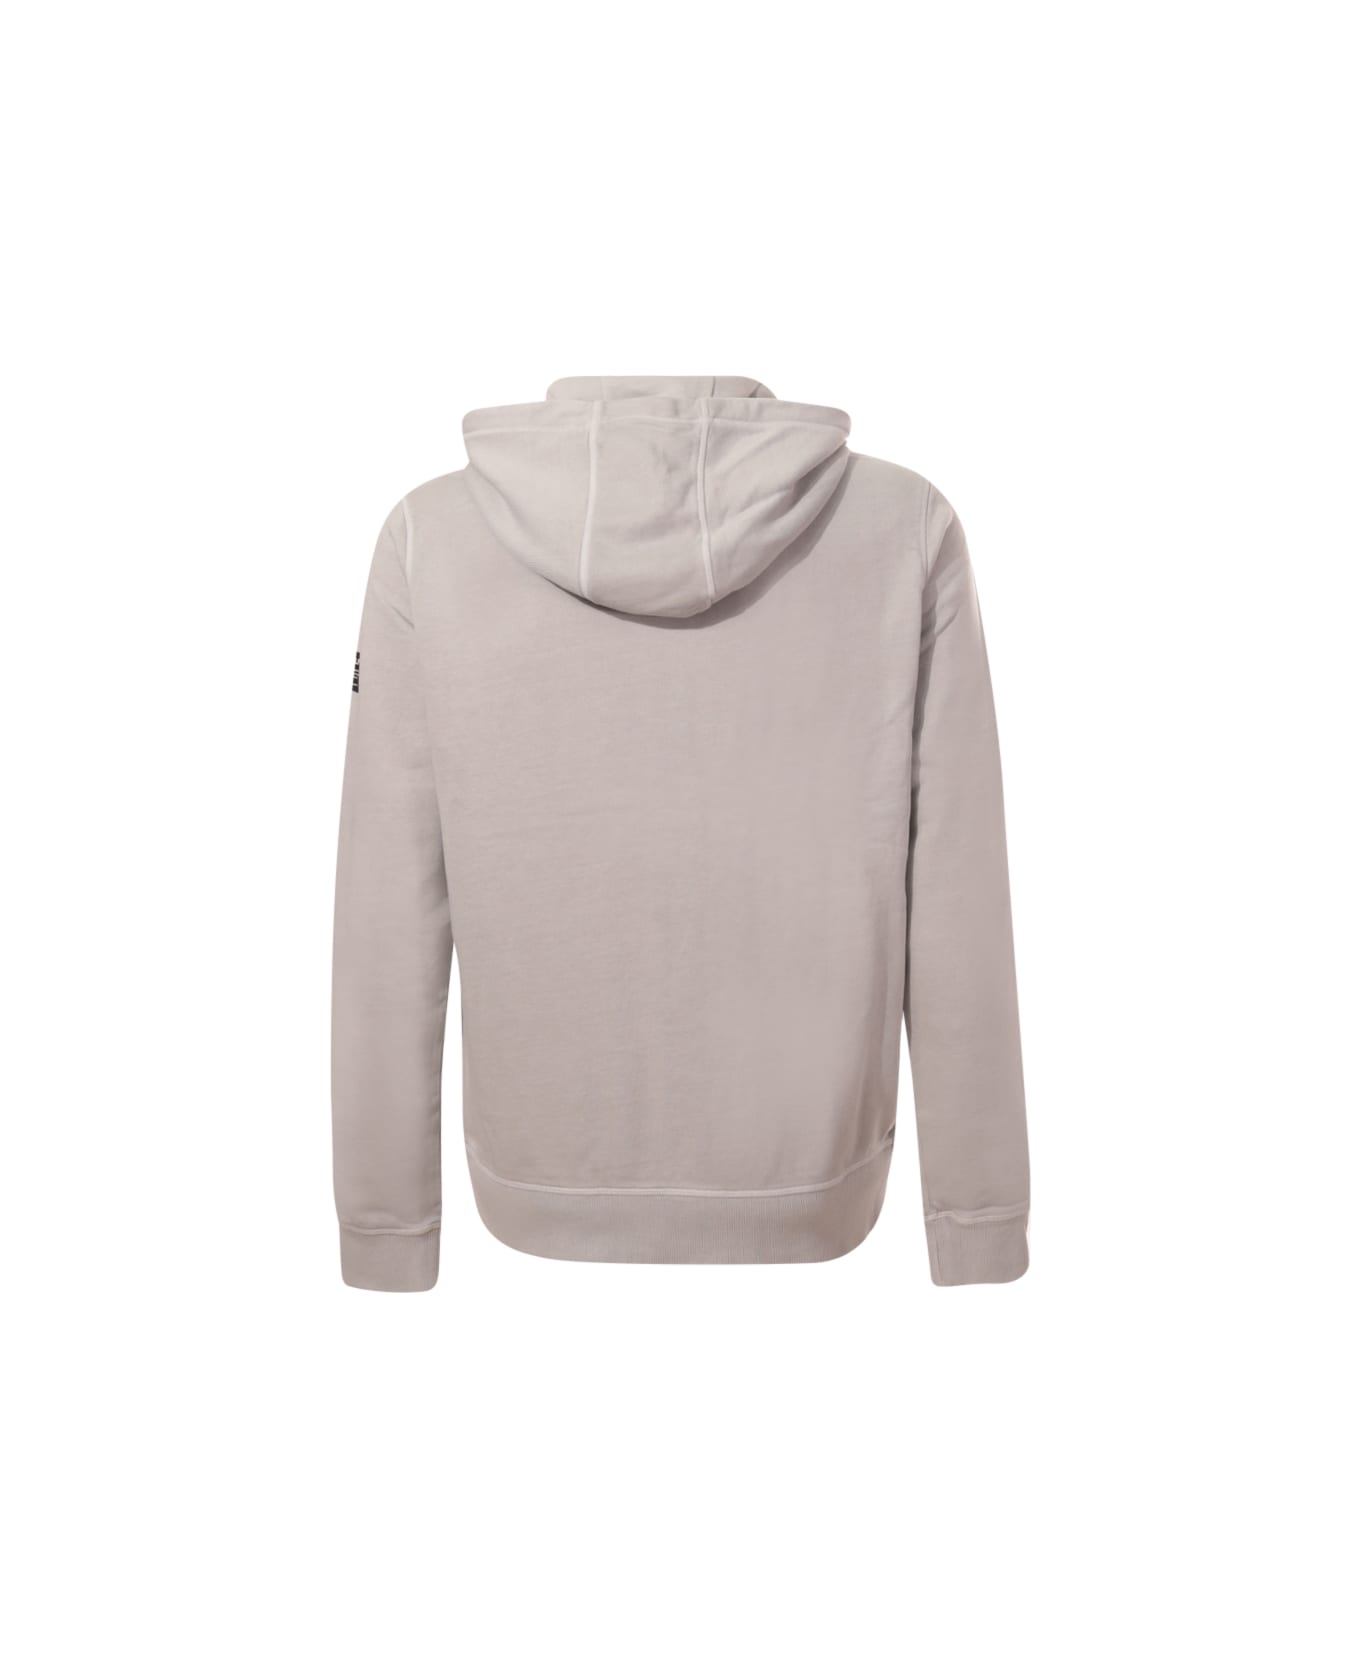 Ecoalf Sweatshirt - Grey